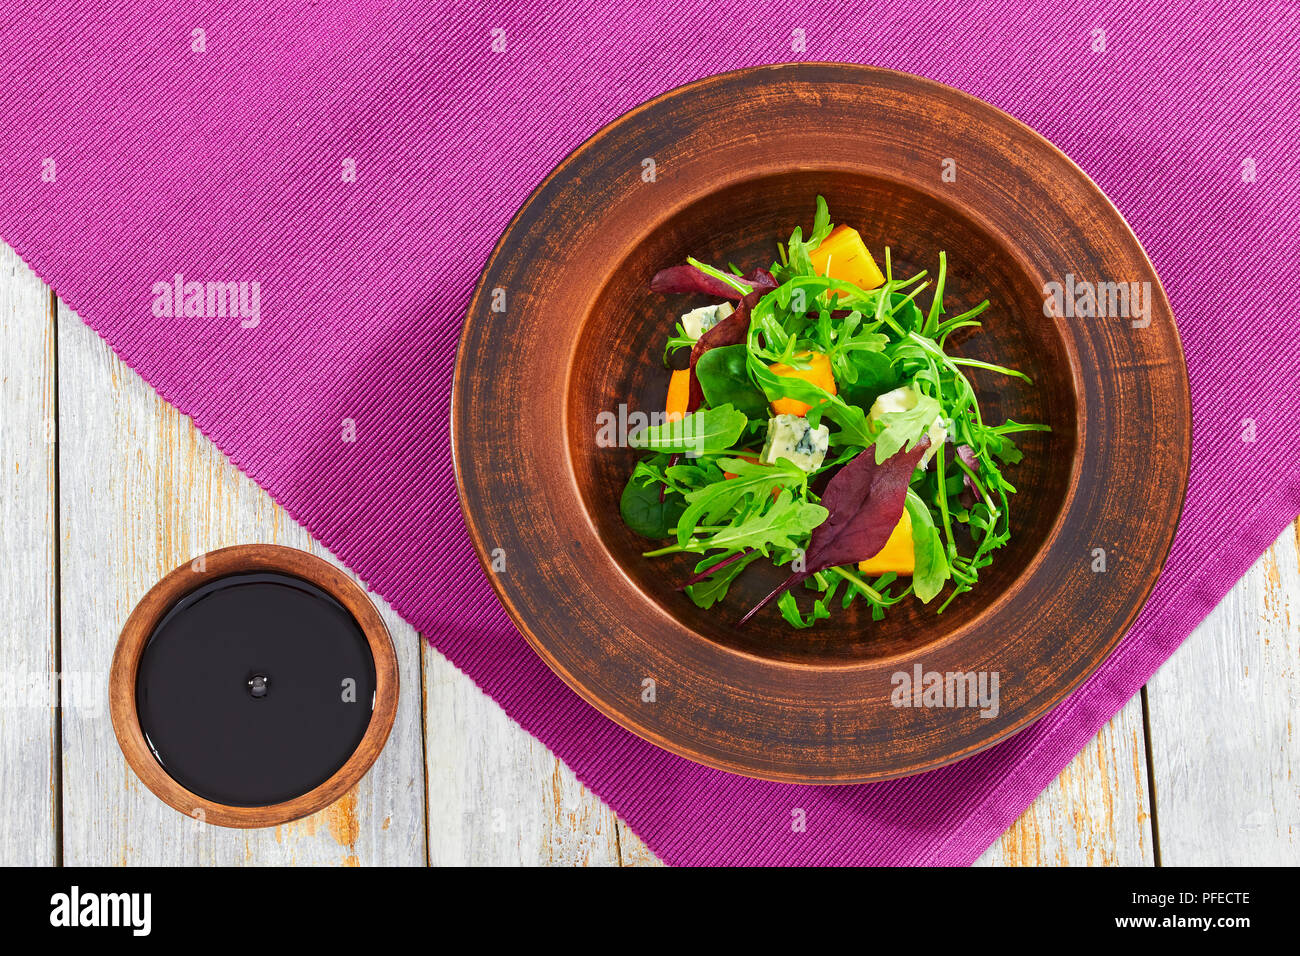 Kaki, fromage bleu, roquette, jeunes épinards, laitue et noix délicieuse salade dans la plaque d'argile avec vinaigrette au vinaigre balsamique sur fond de bois Banque D'Images